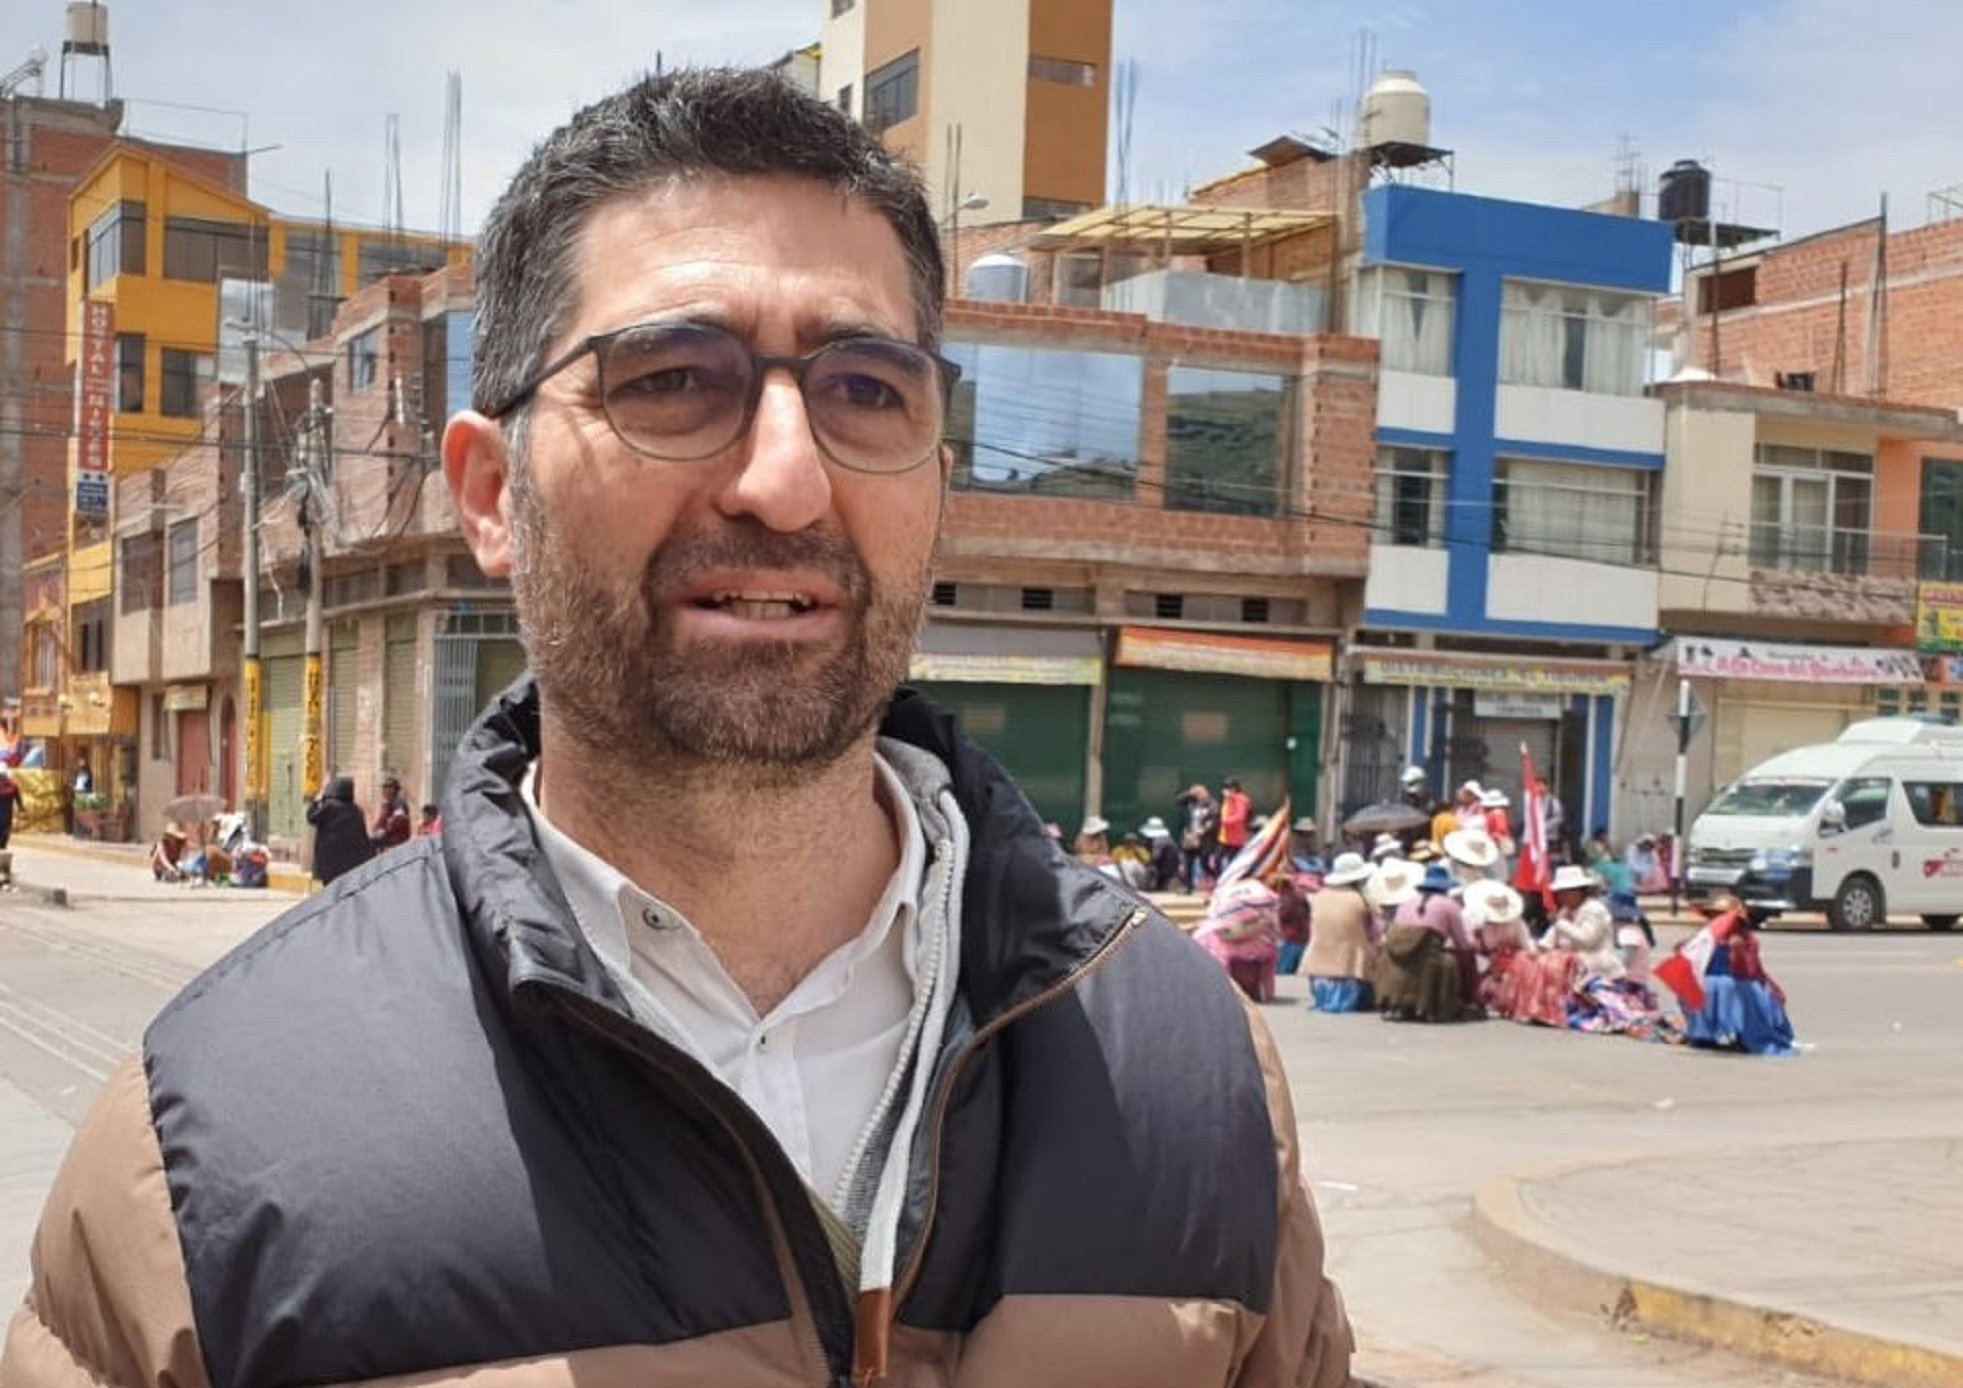 L'exconseller Jordi Puigneró, testimoni de la crisi política del Perú | VÍDEO